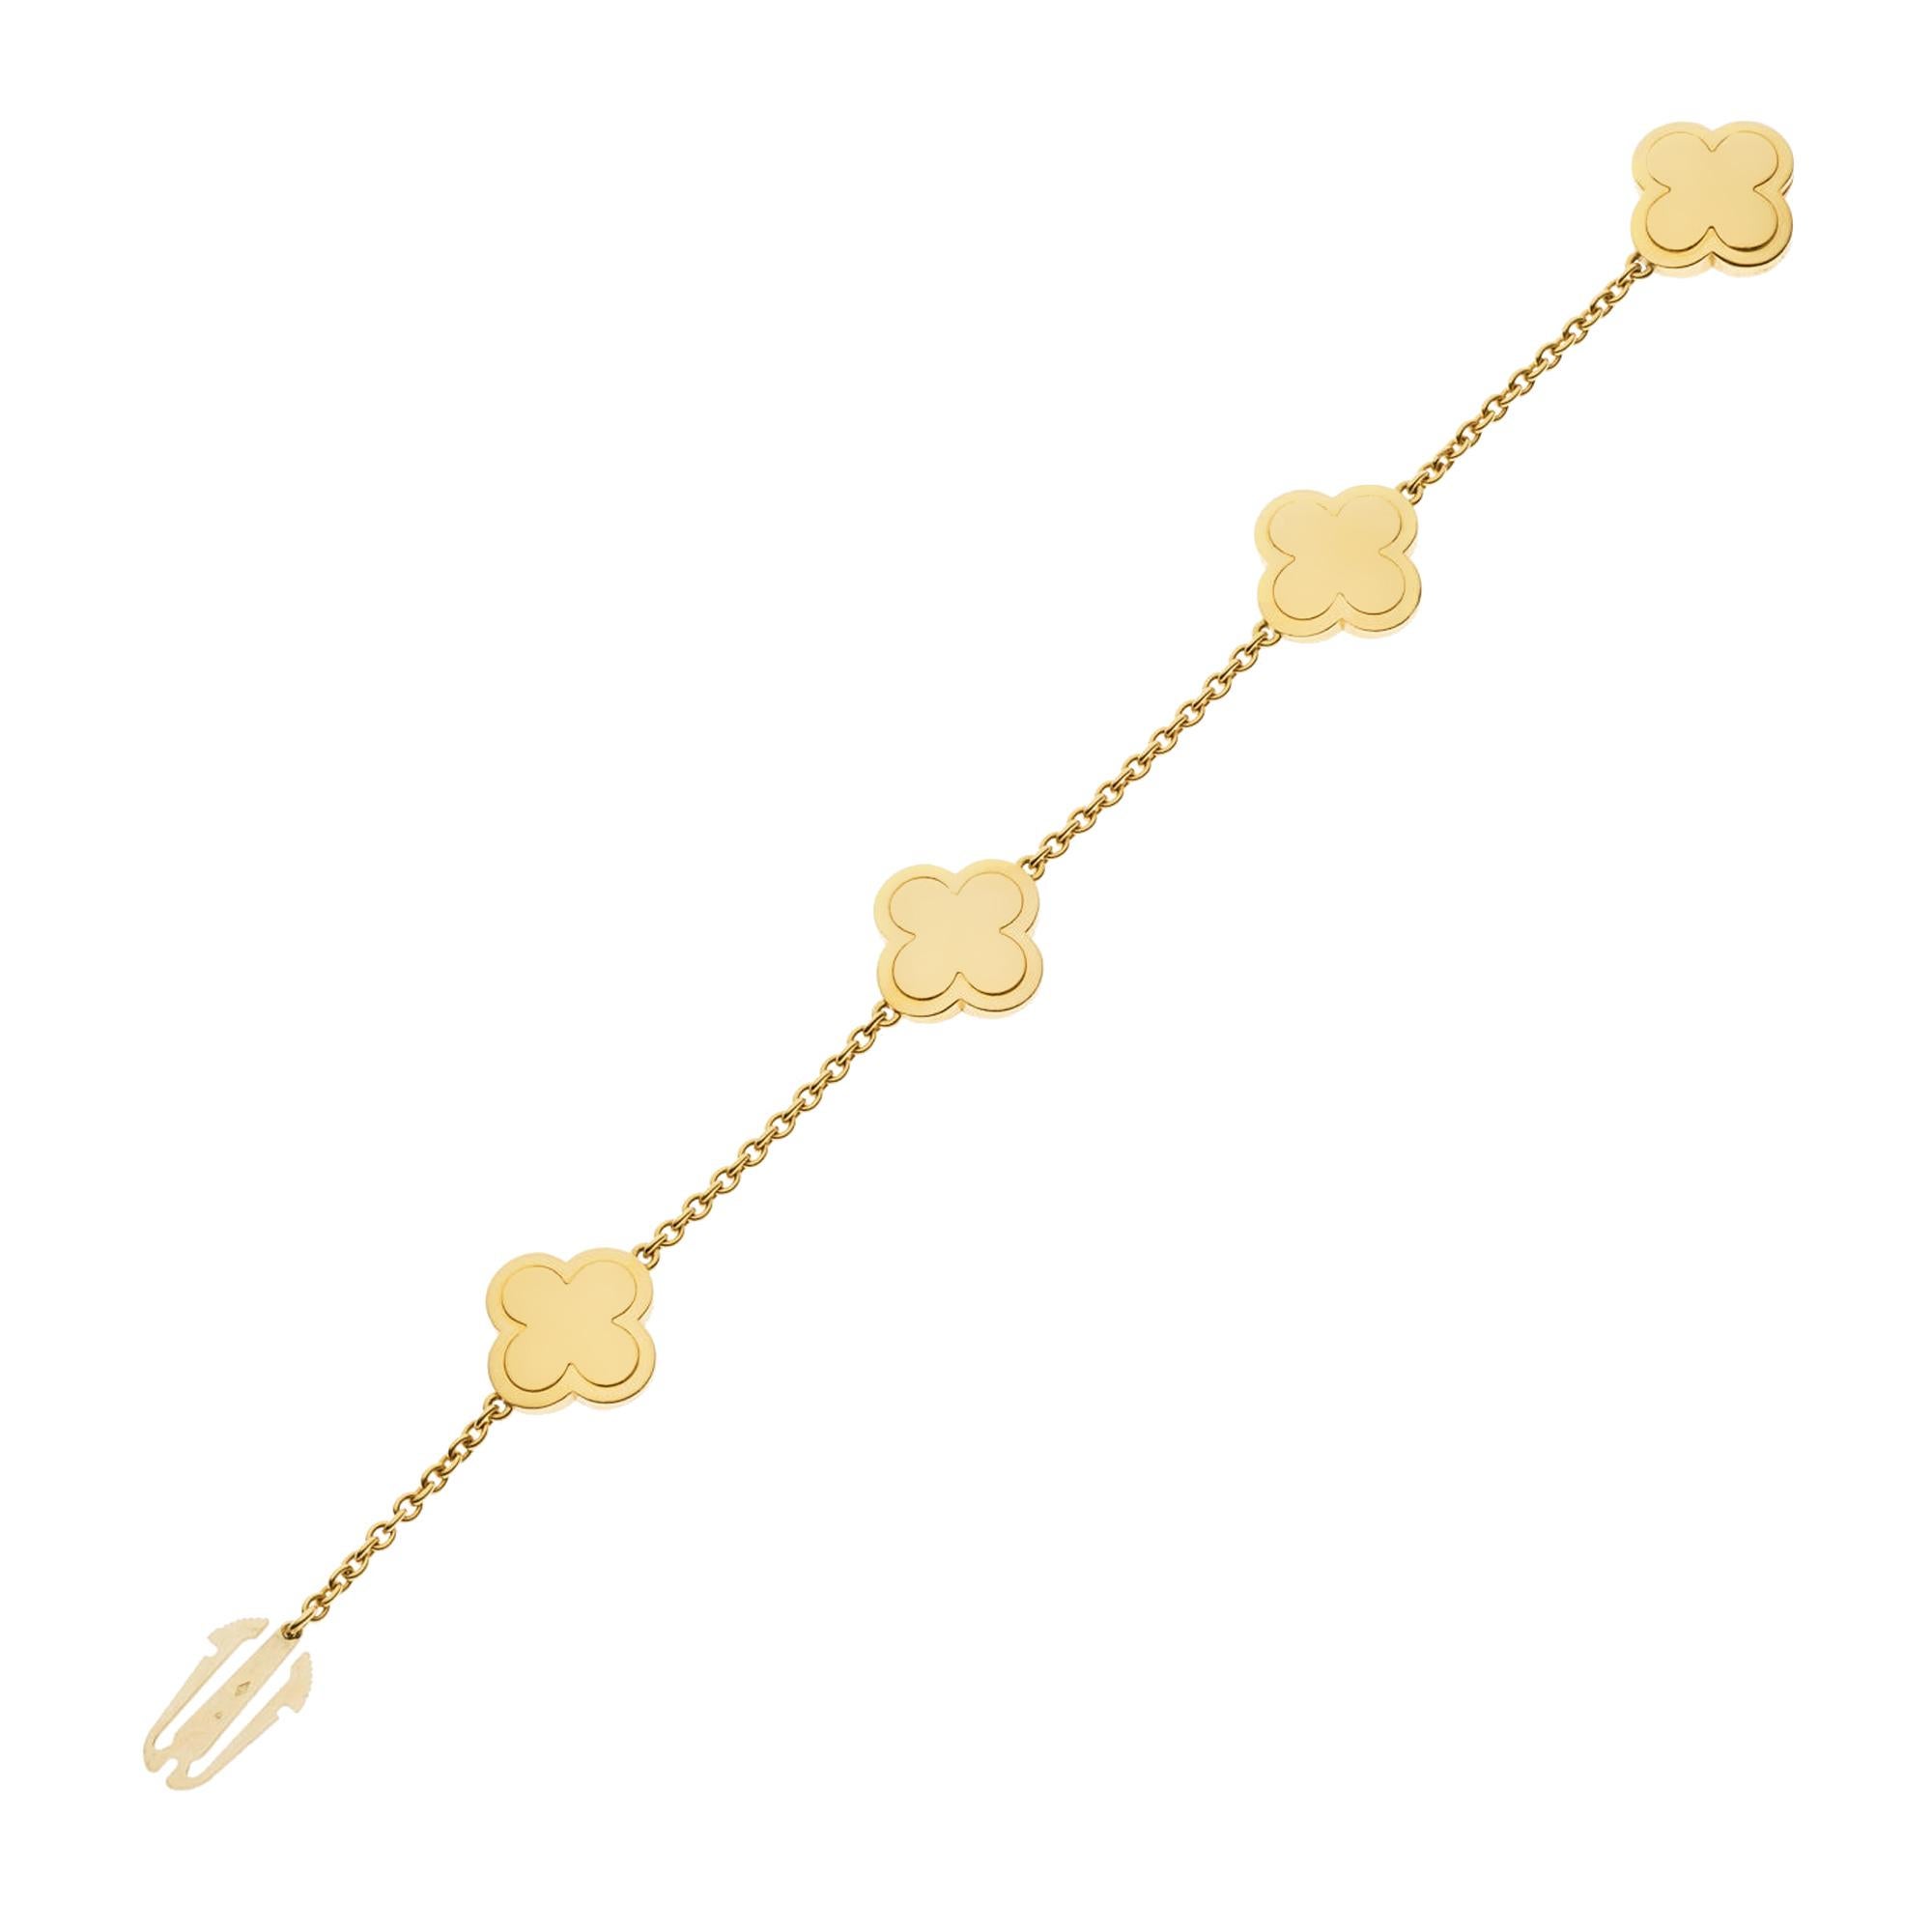 Das Van Cleef & Arpels Pure Alhambra Diamantarmband aus Gelbgold ist der Inbegriff von luxuriöser Eleganz und zeitlosem Design. Dieses exquisite Stück ist Teil der berühmten Pure Alhambra-Kollektion, die sich vom maurischen Charme des